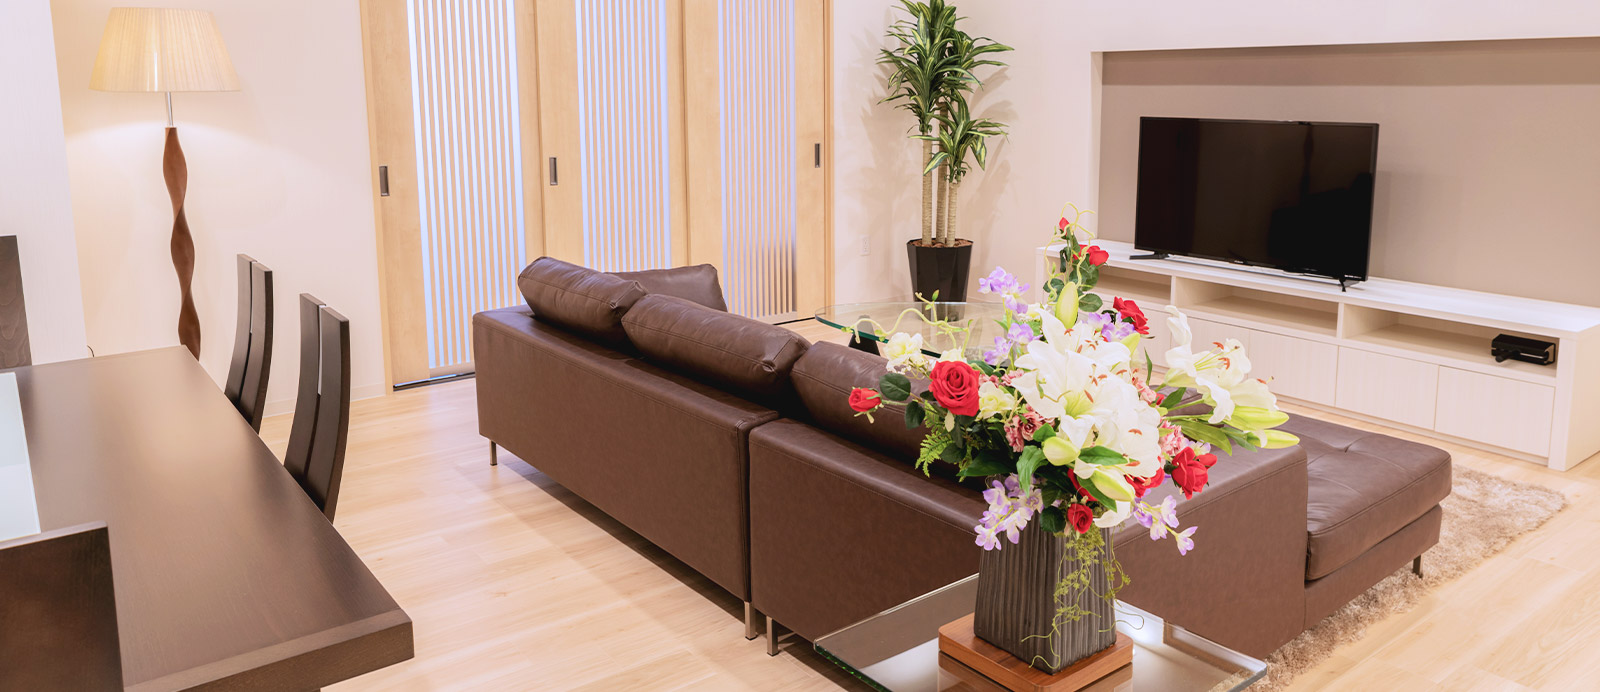 福室ホールで葬儀・葬式が9.5万円からできる家族葬の仙和のホールの内装イメージ